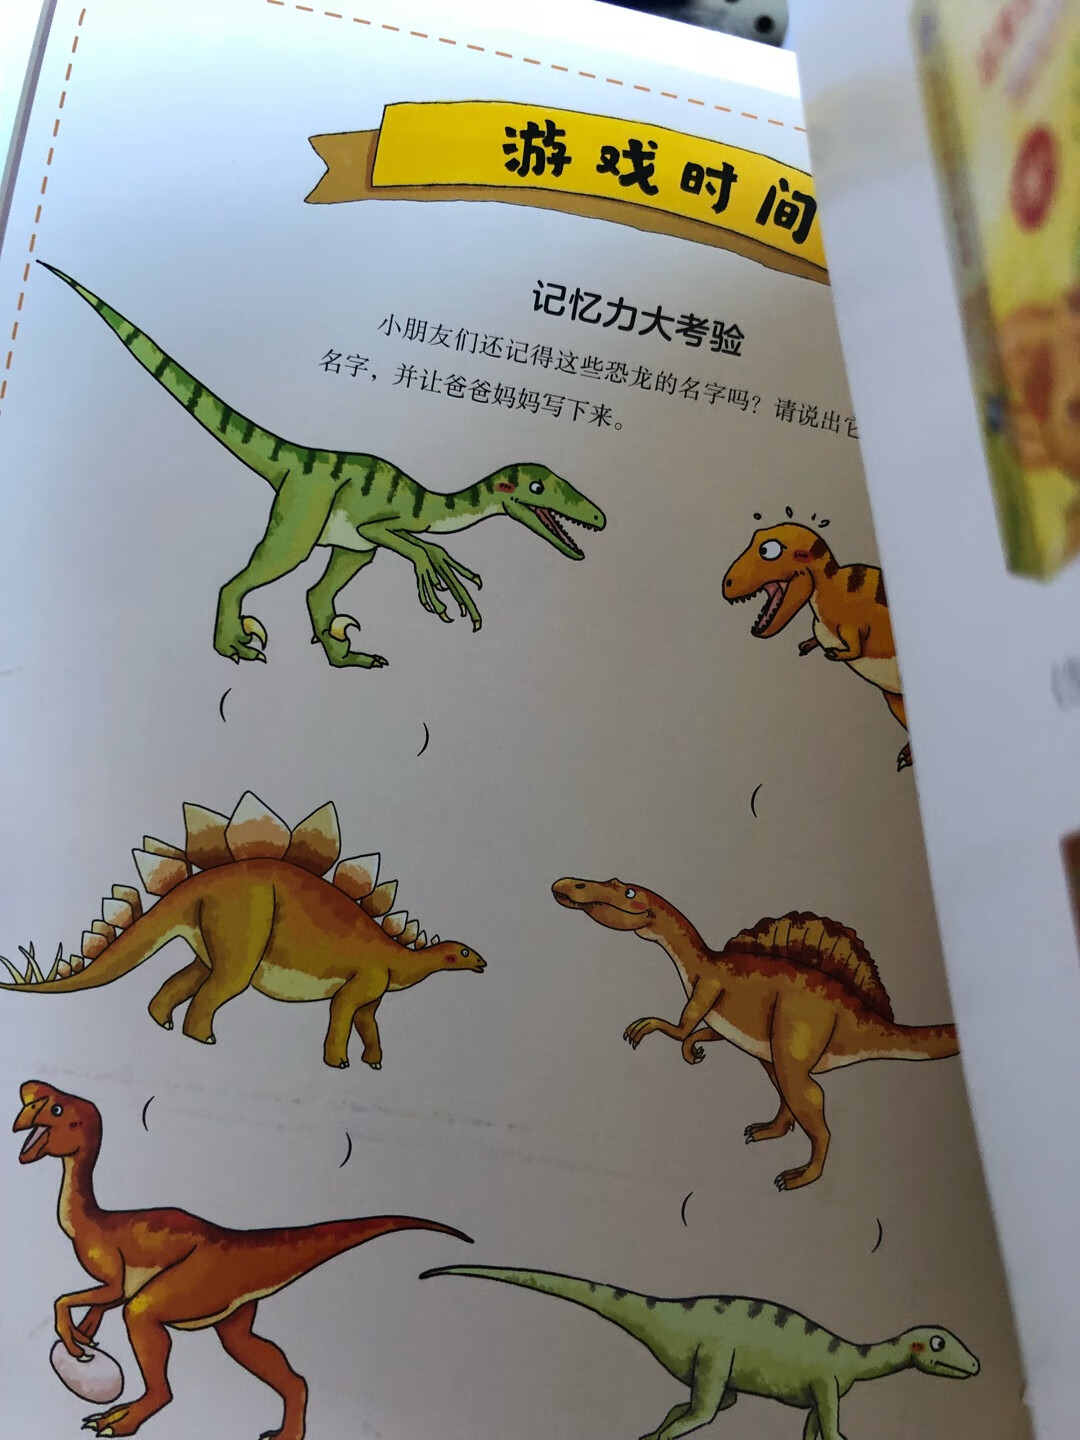 恐龙科普书，男孩应该都会喜欢，还有一些冷门知识很有趣